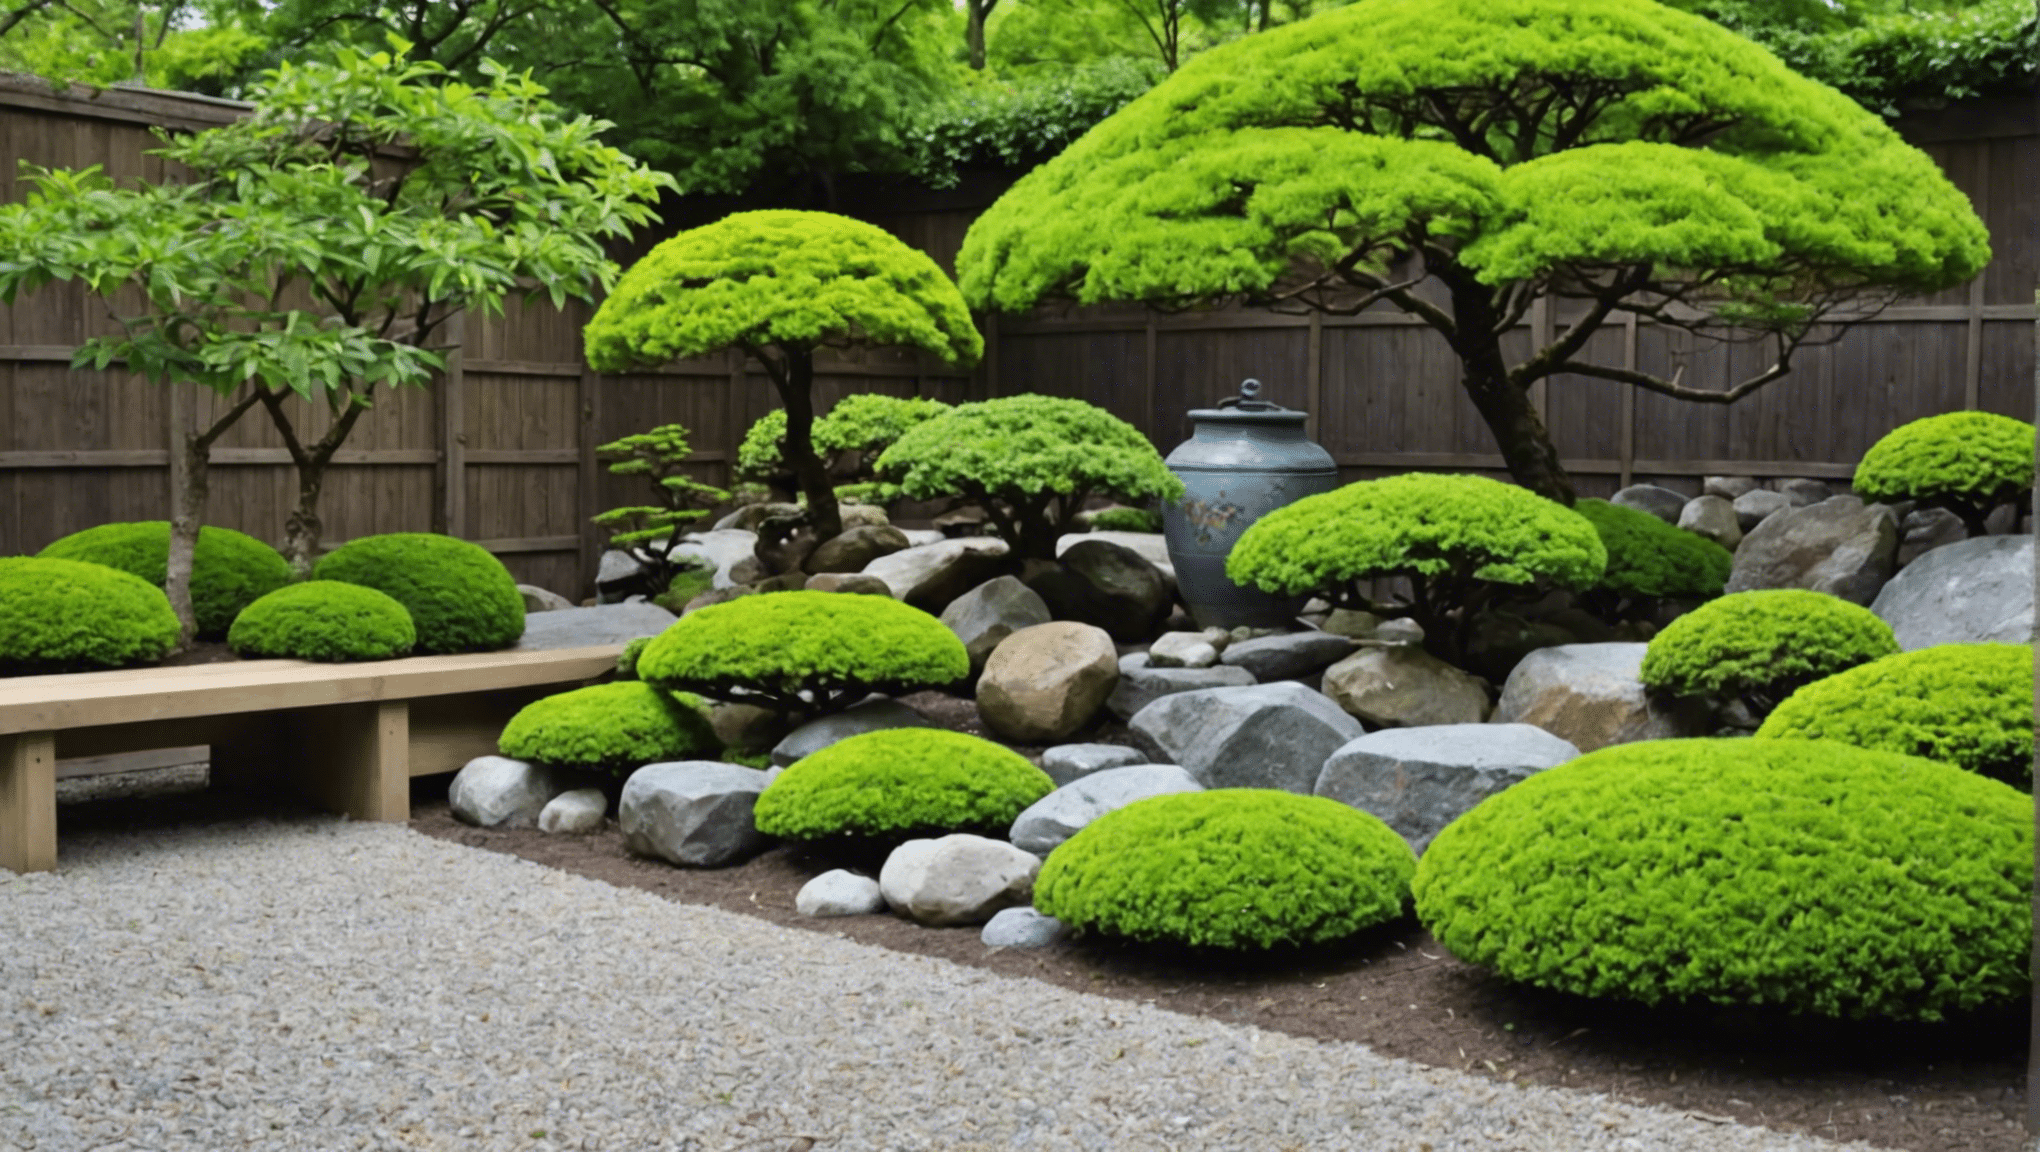 upptäck om japanska trädgårdsredskap är nyckeln till att skapa en fantastisk trädgård med expertinsikter och råd.